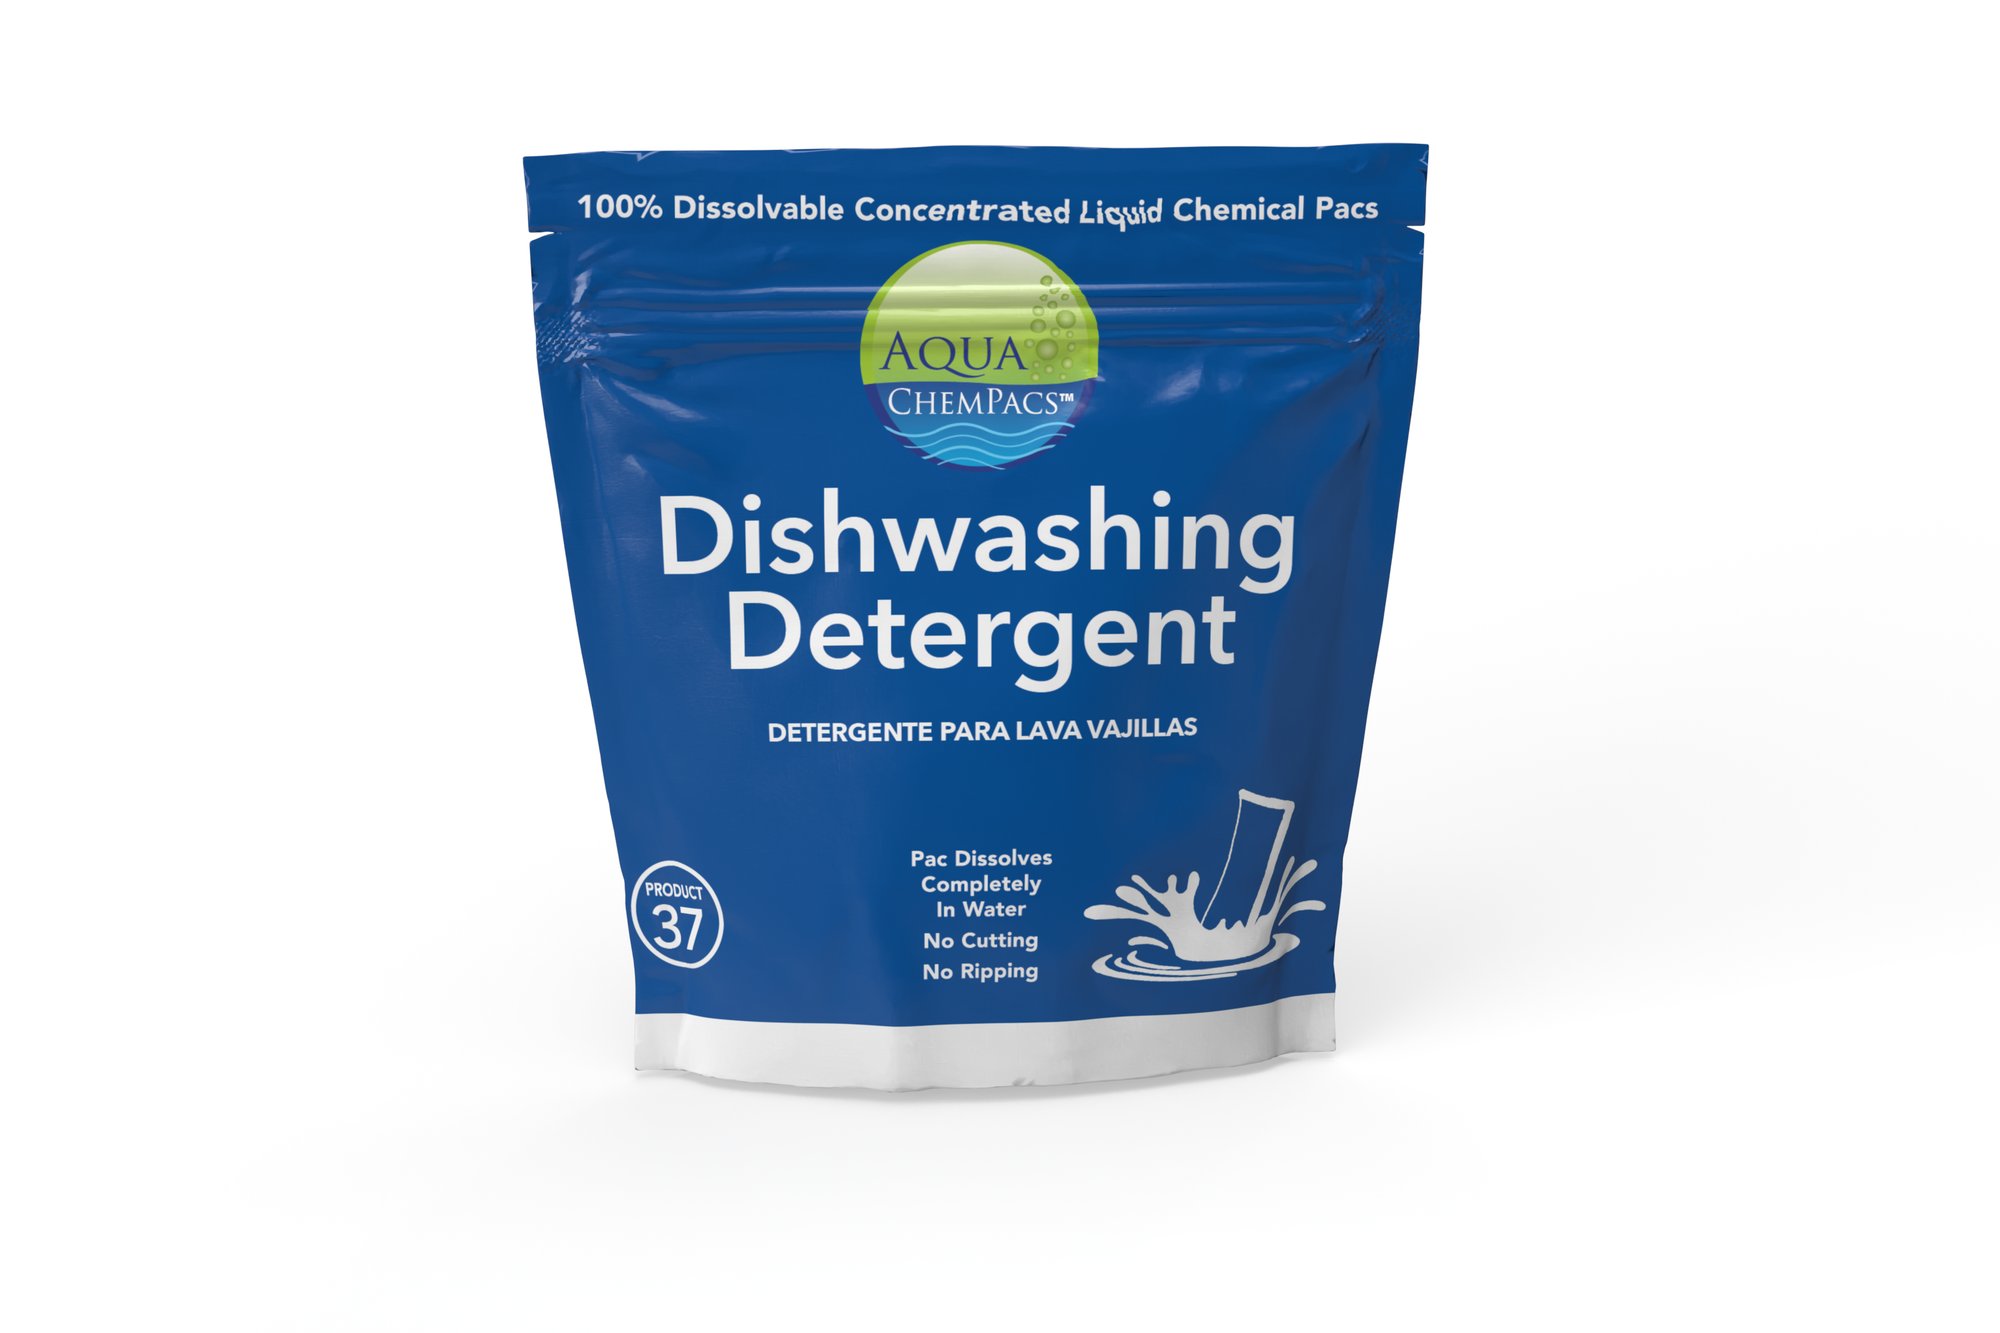 DishwashingDetergent-Current View